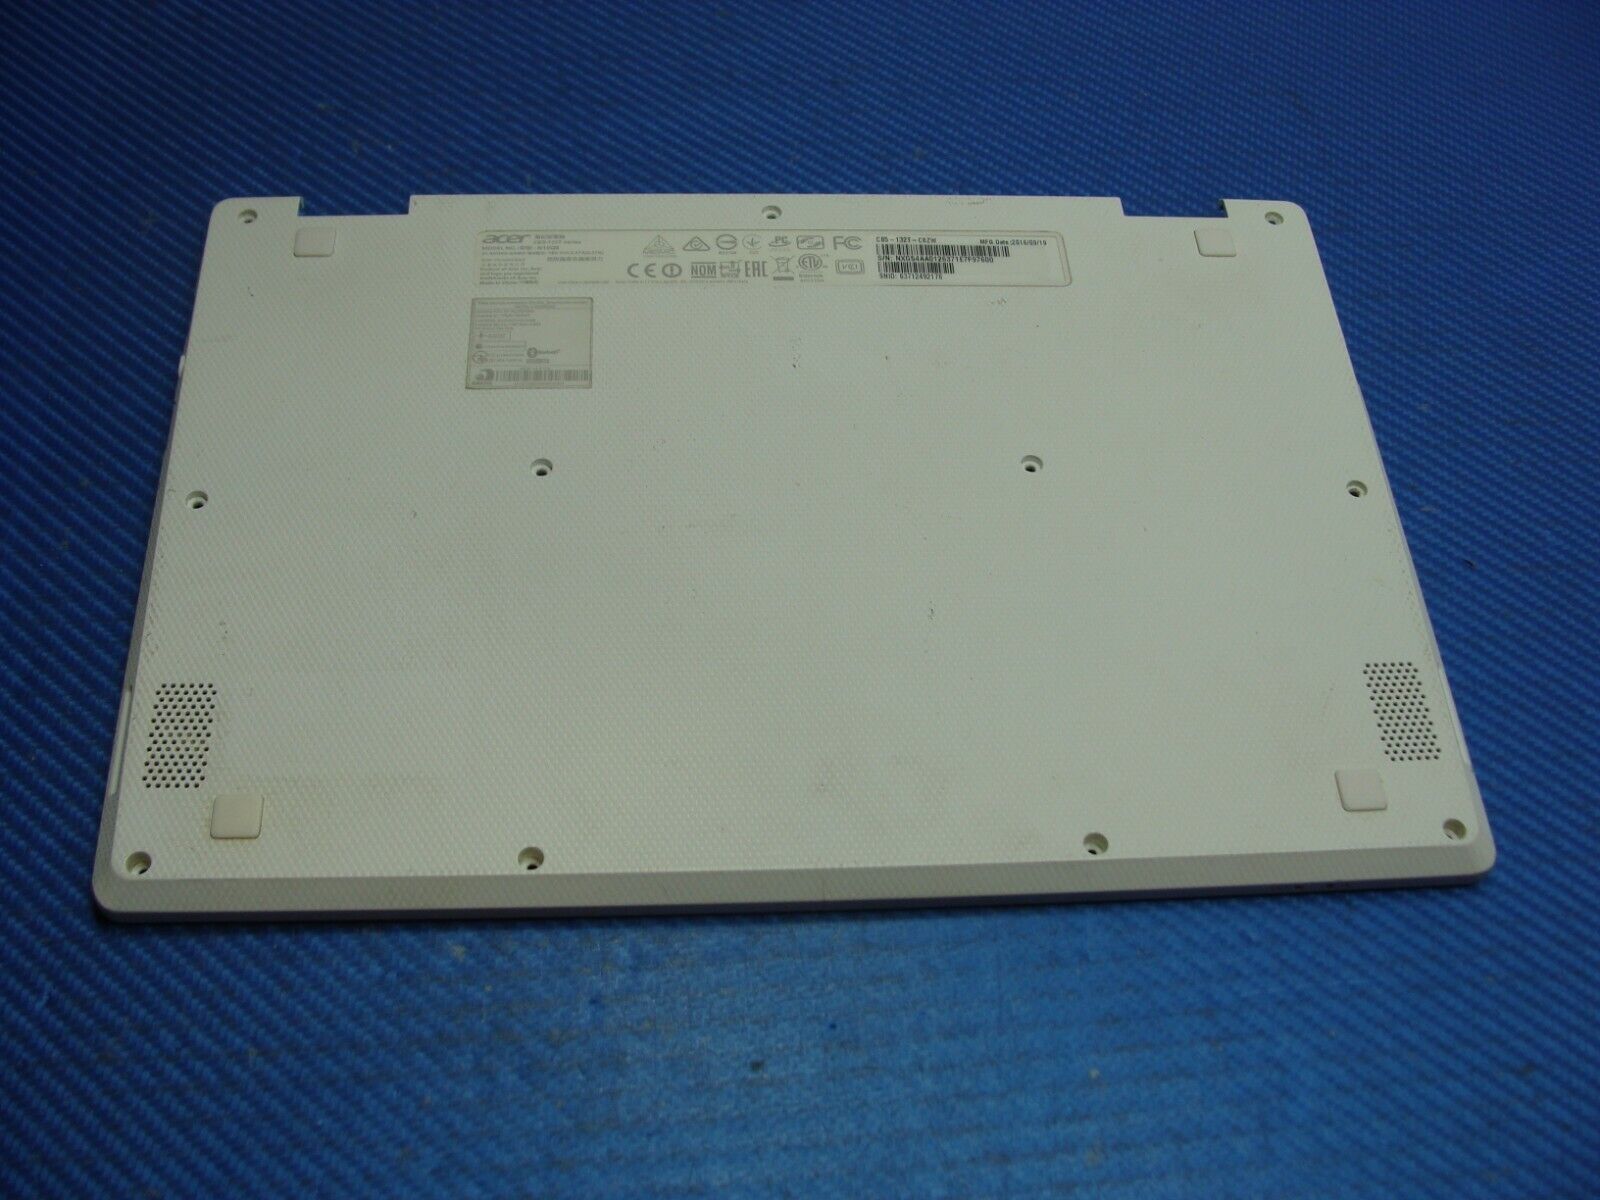 Acer Chromebook 11.6 CB5-132T OEM Laptop Bottom Case Base Cover EAZHR00301A